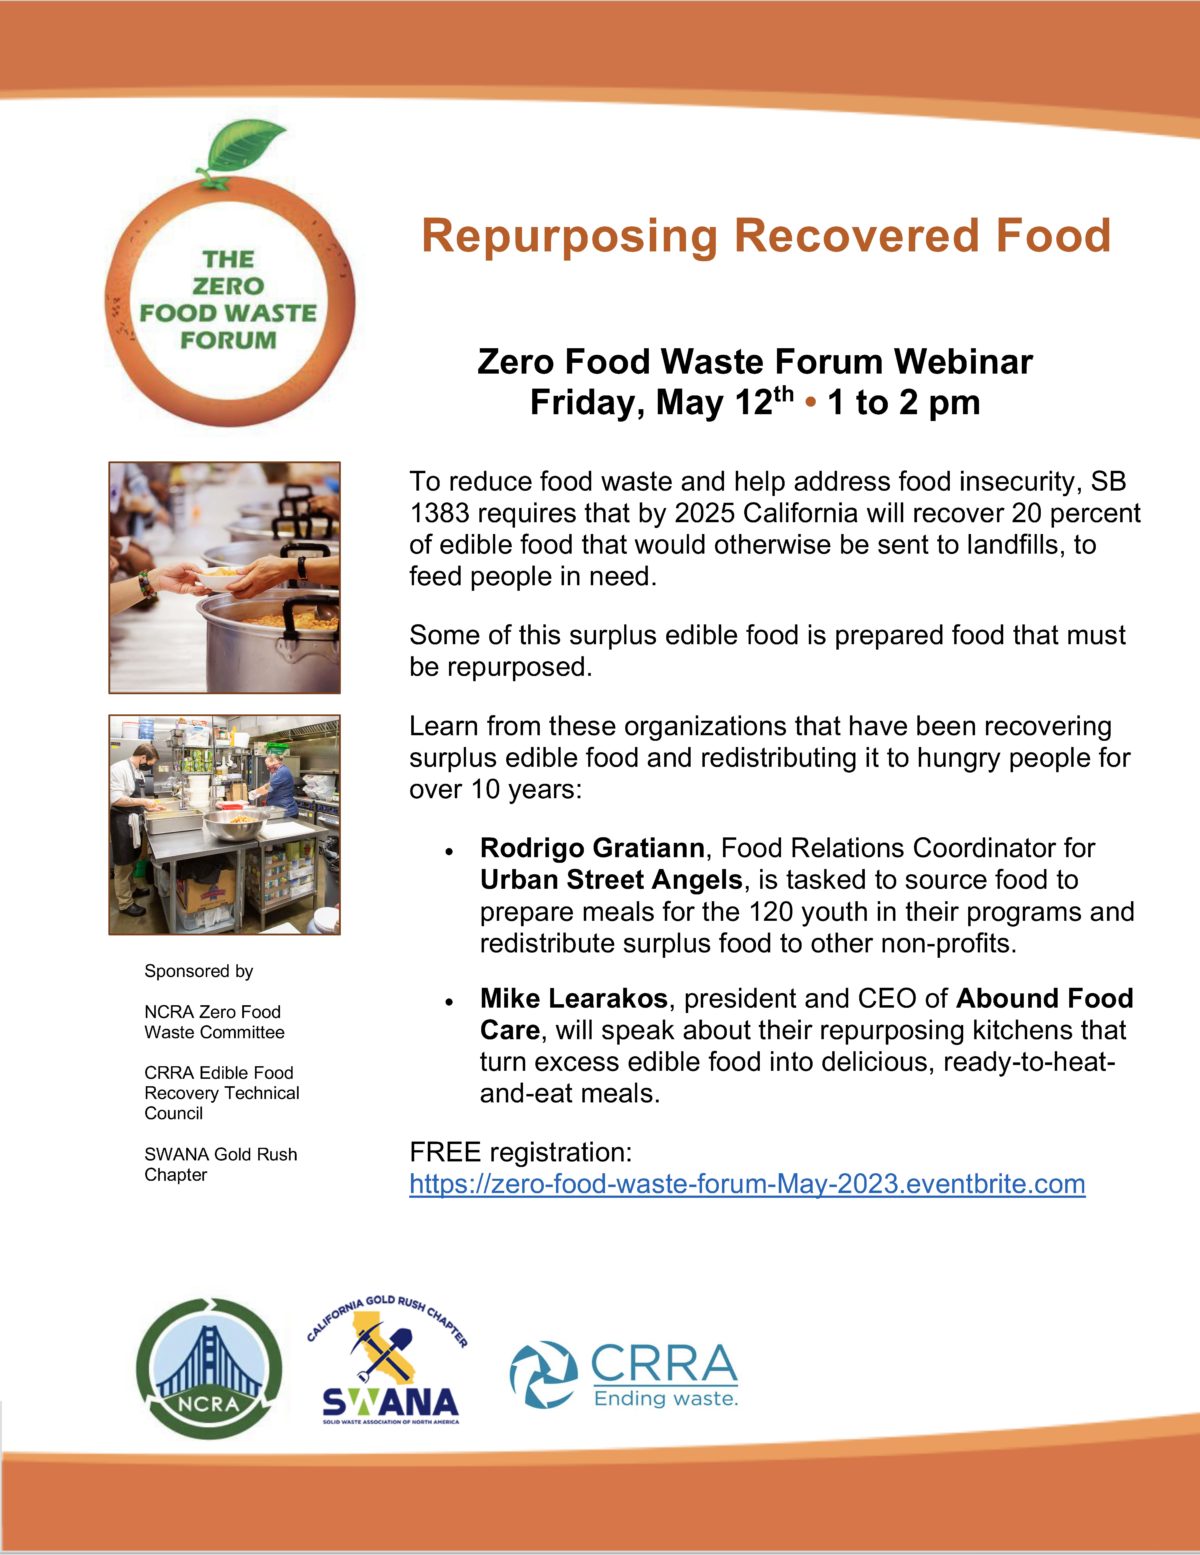 Recording: Repurposing Recovered Food Webinar, 5/23